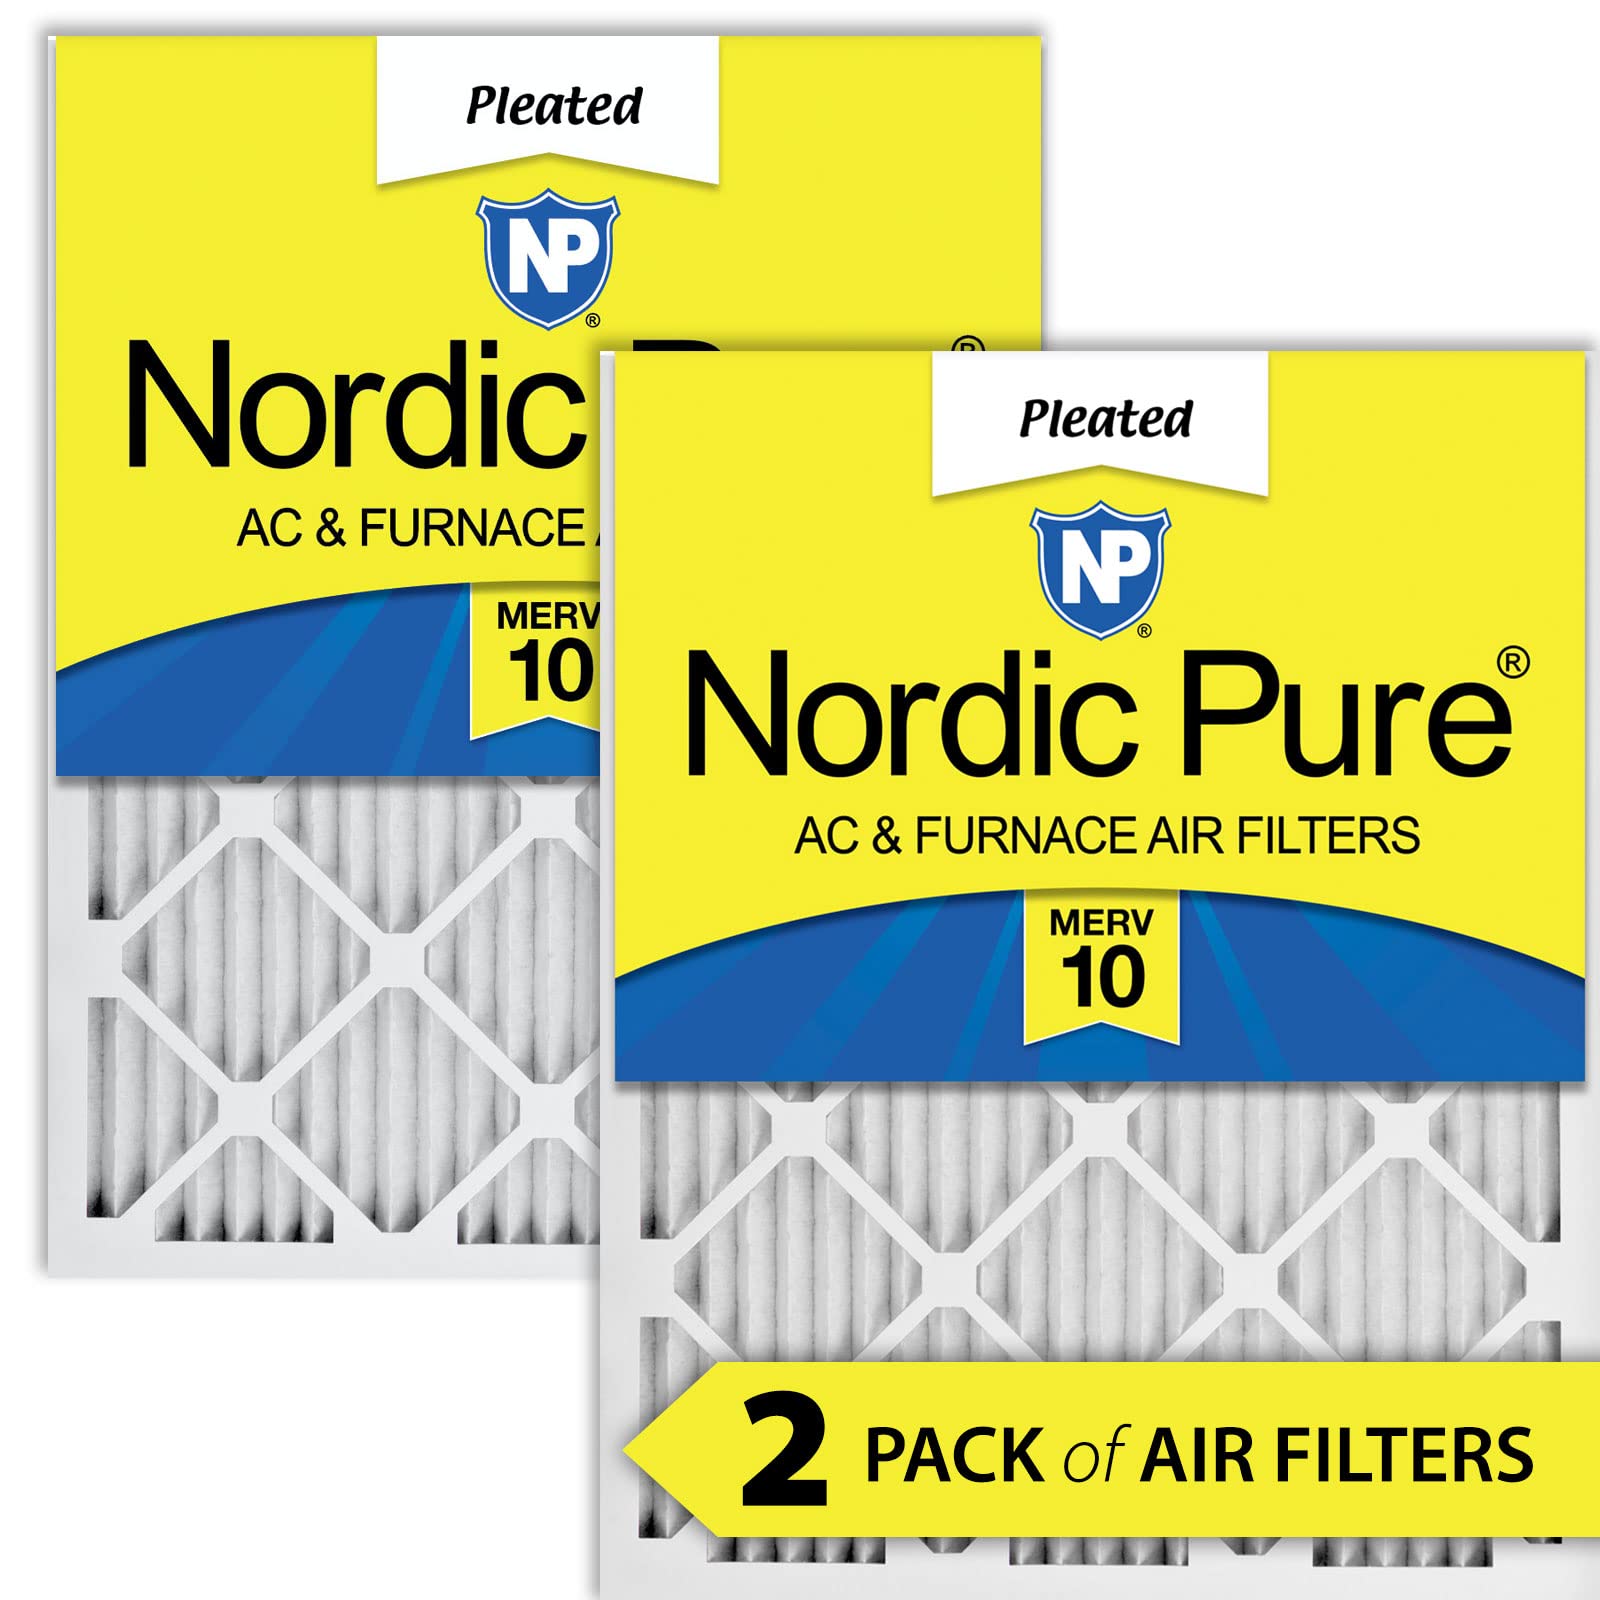 Nordic Pure Plisowany filtr powietrza do pieca AC 16x20x1 MERV